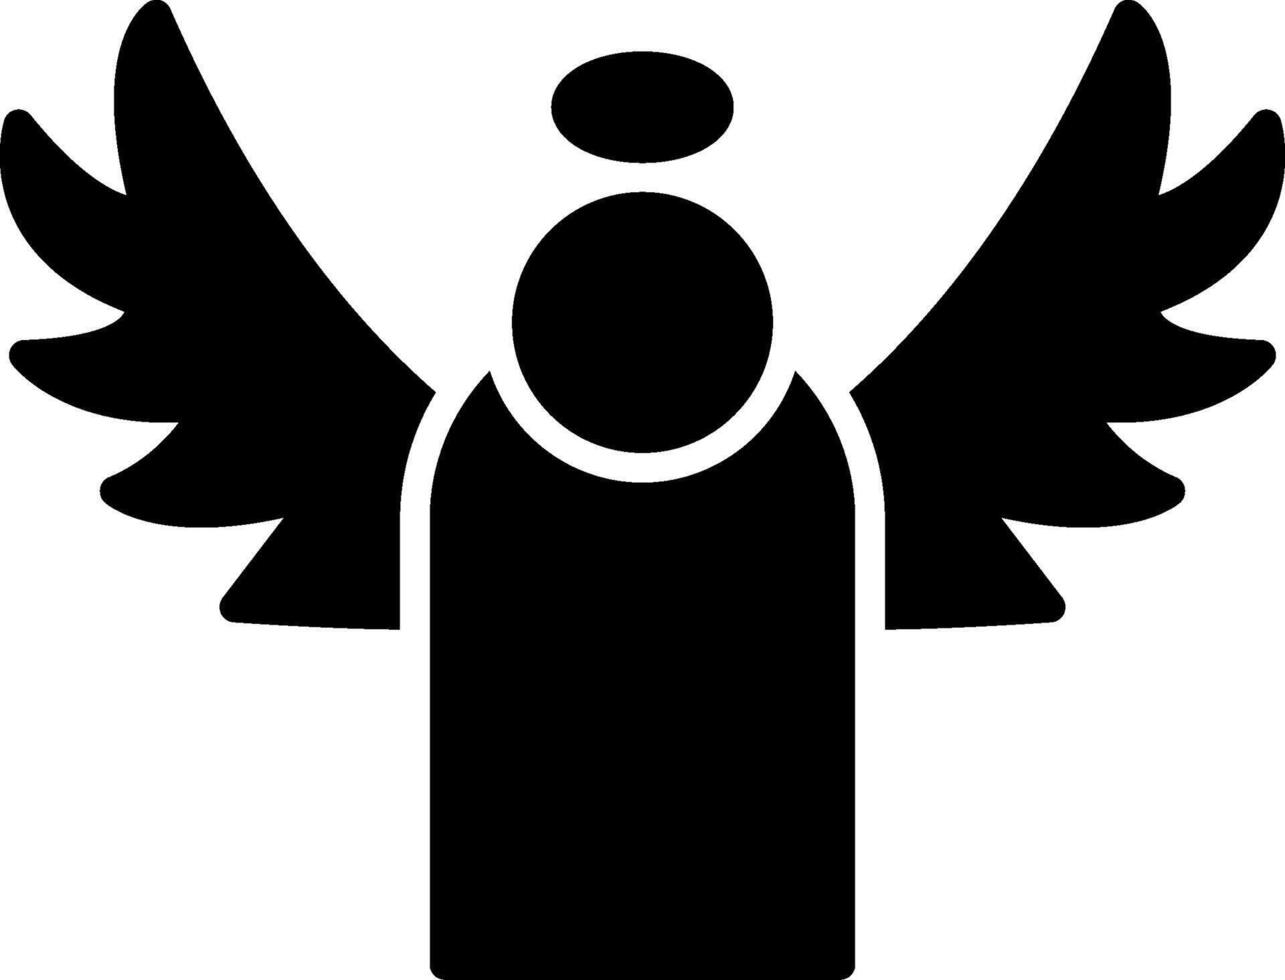 icône de glyphe d'ange vecteur